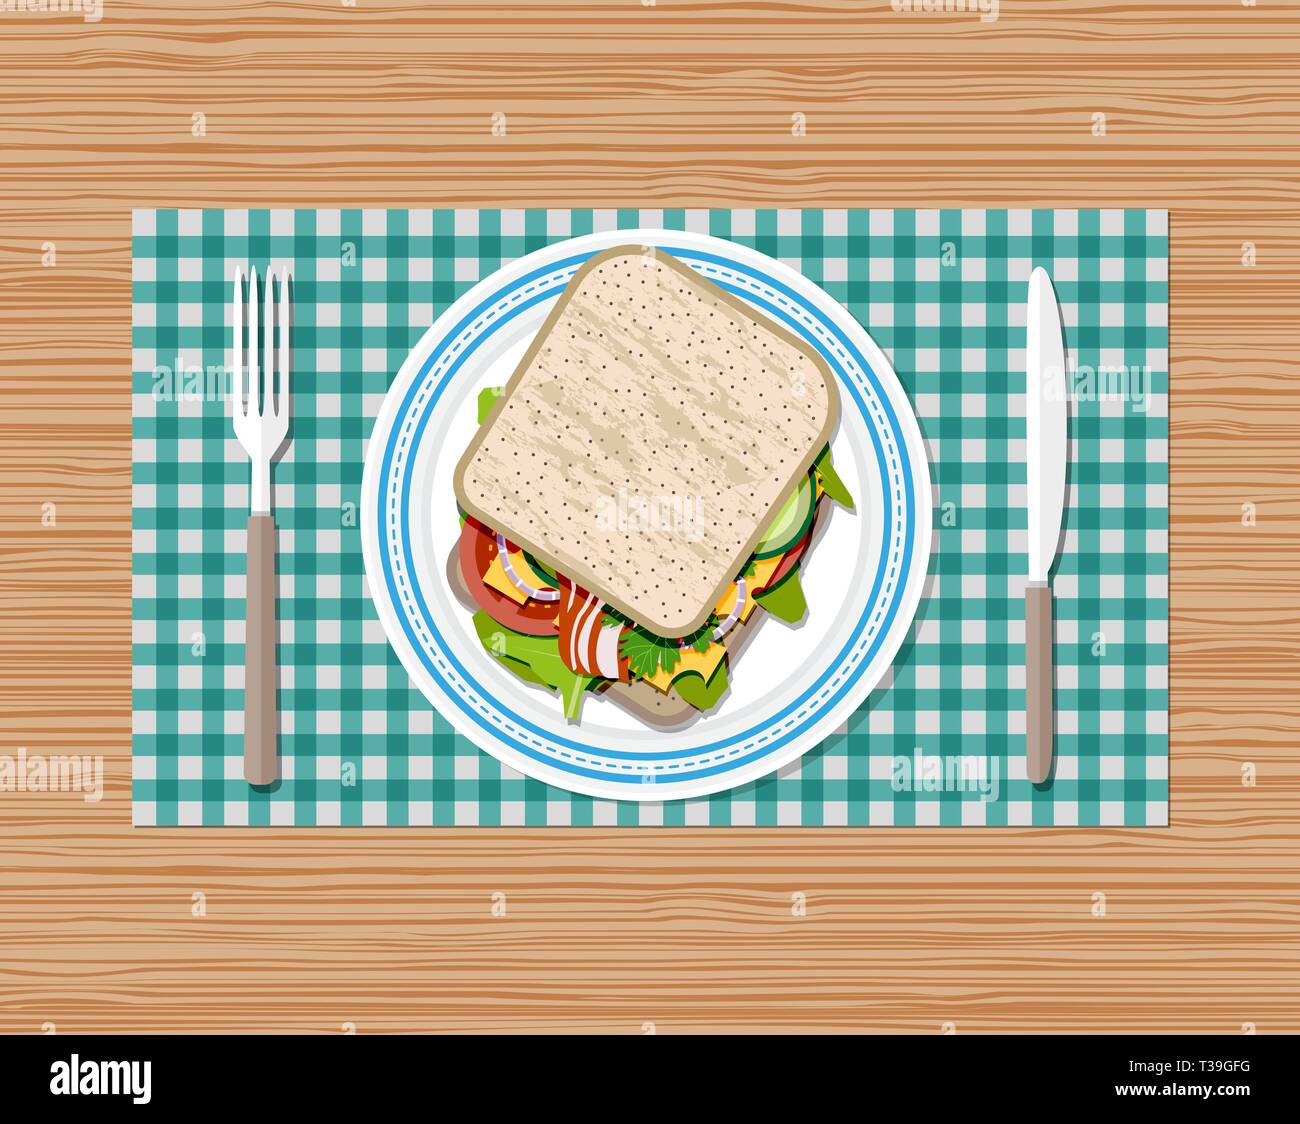 Vista superior de la placa de emparedado. tenedor y cuchillo. tostadas de pan, tomate, jamón, queso y ensalada. ilustración vectorial en estilo plano sobre fondo de madera Ilustración del Vector